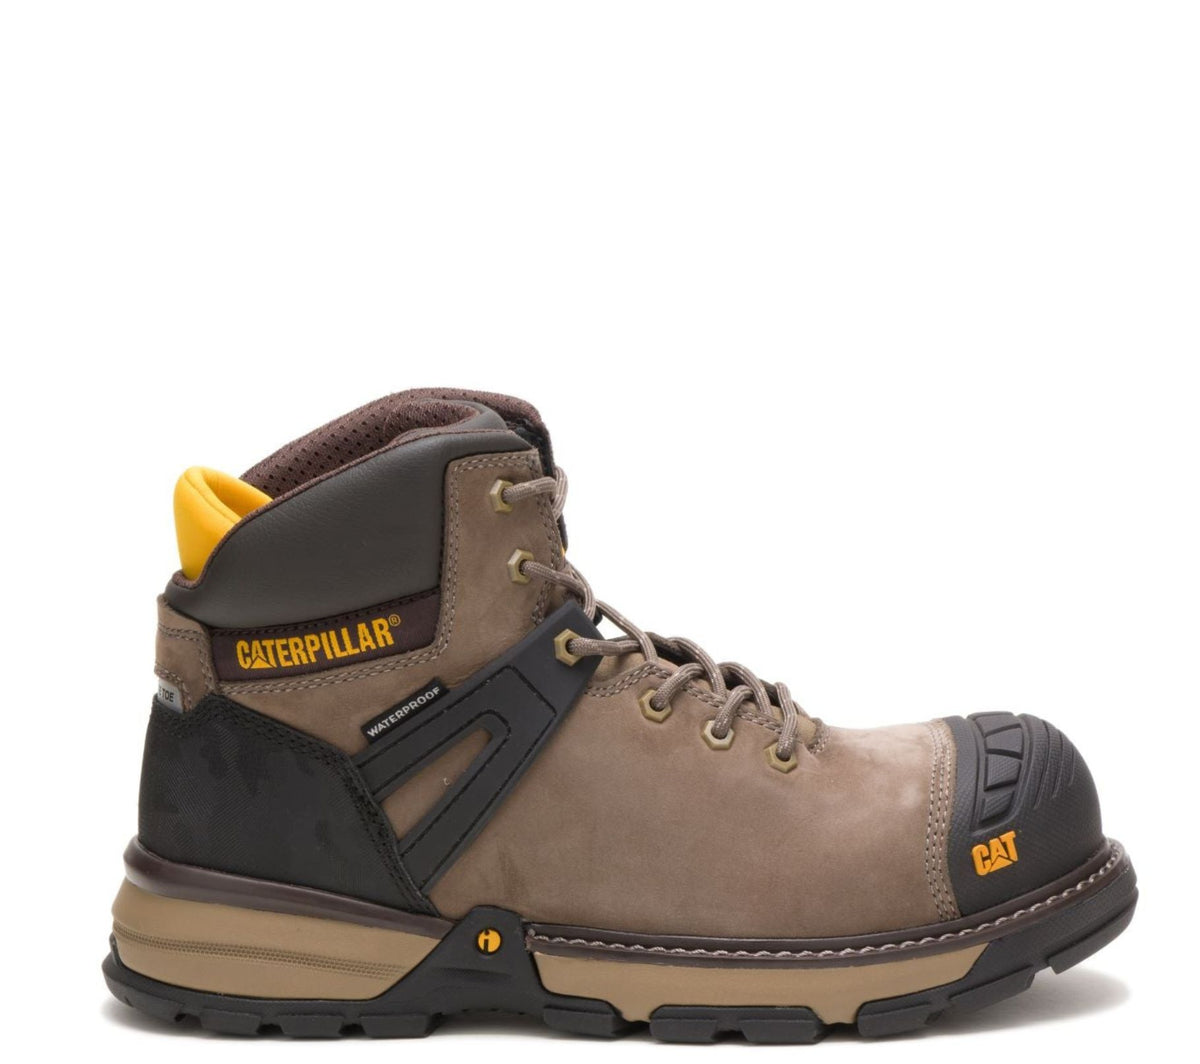 CATExcavator Superlite WP EH NT - Work World - Workwear, Work Boots, Safety Gear